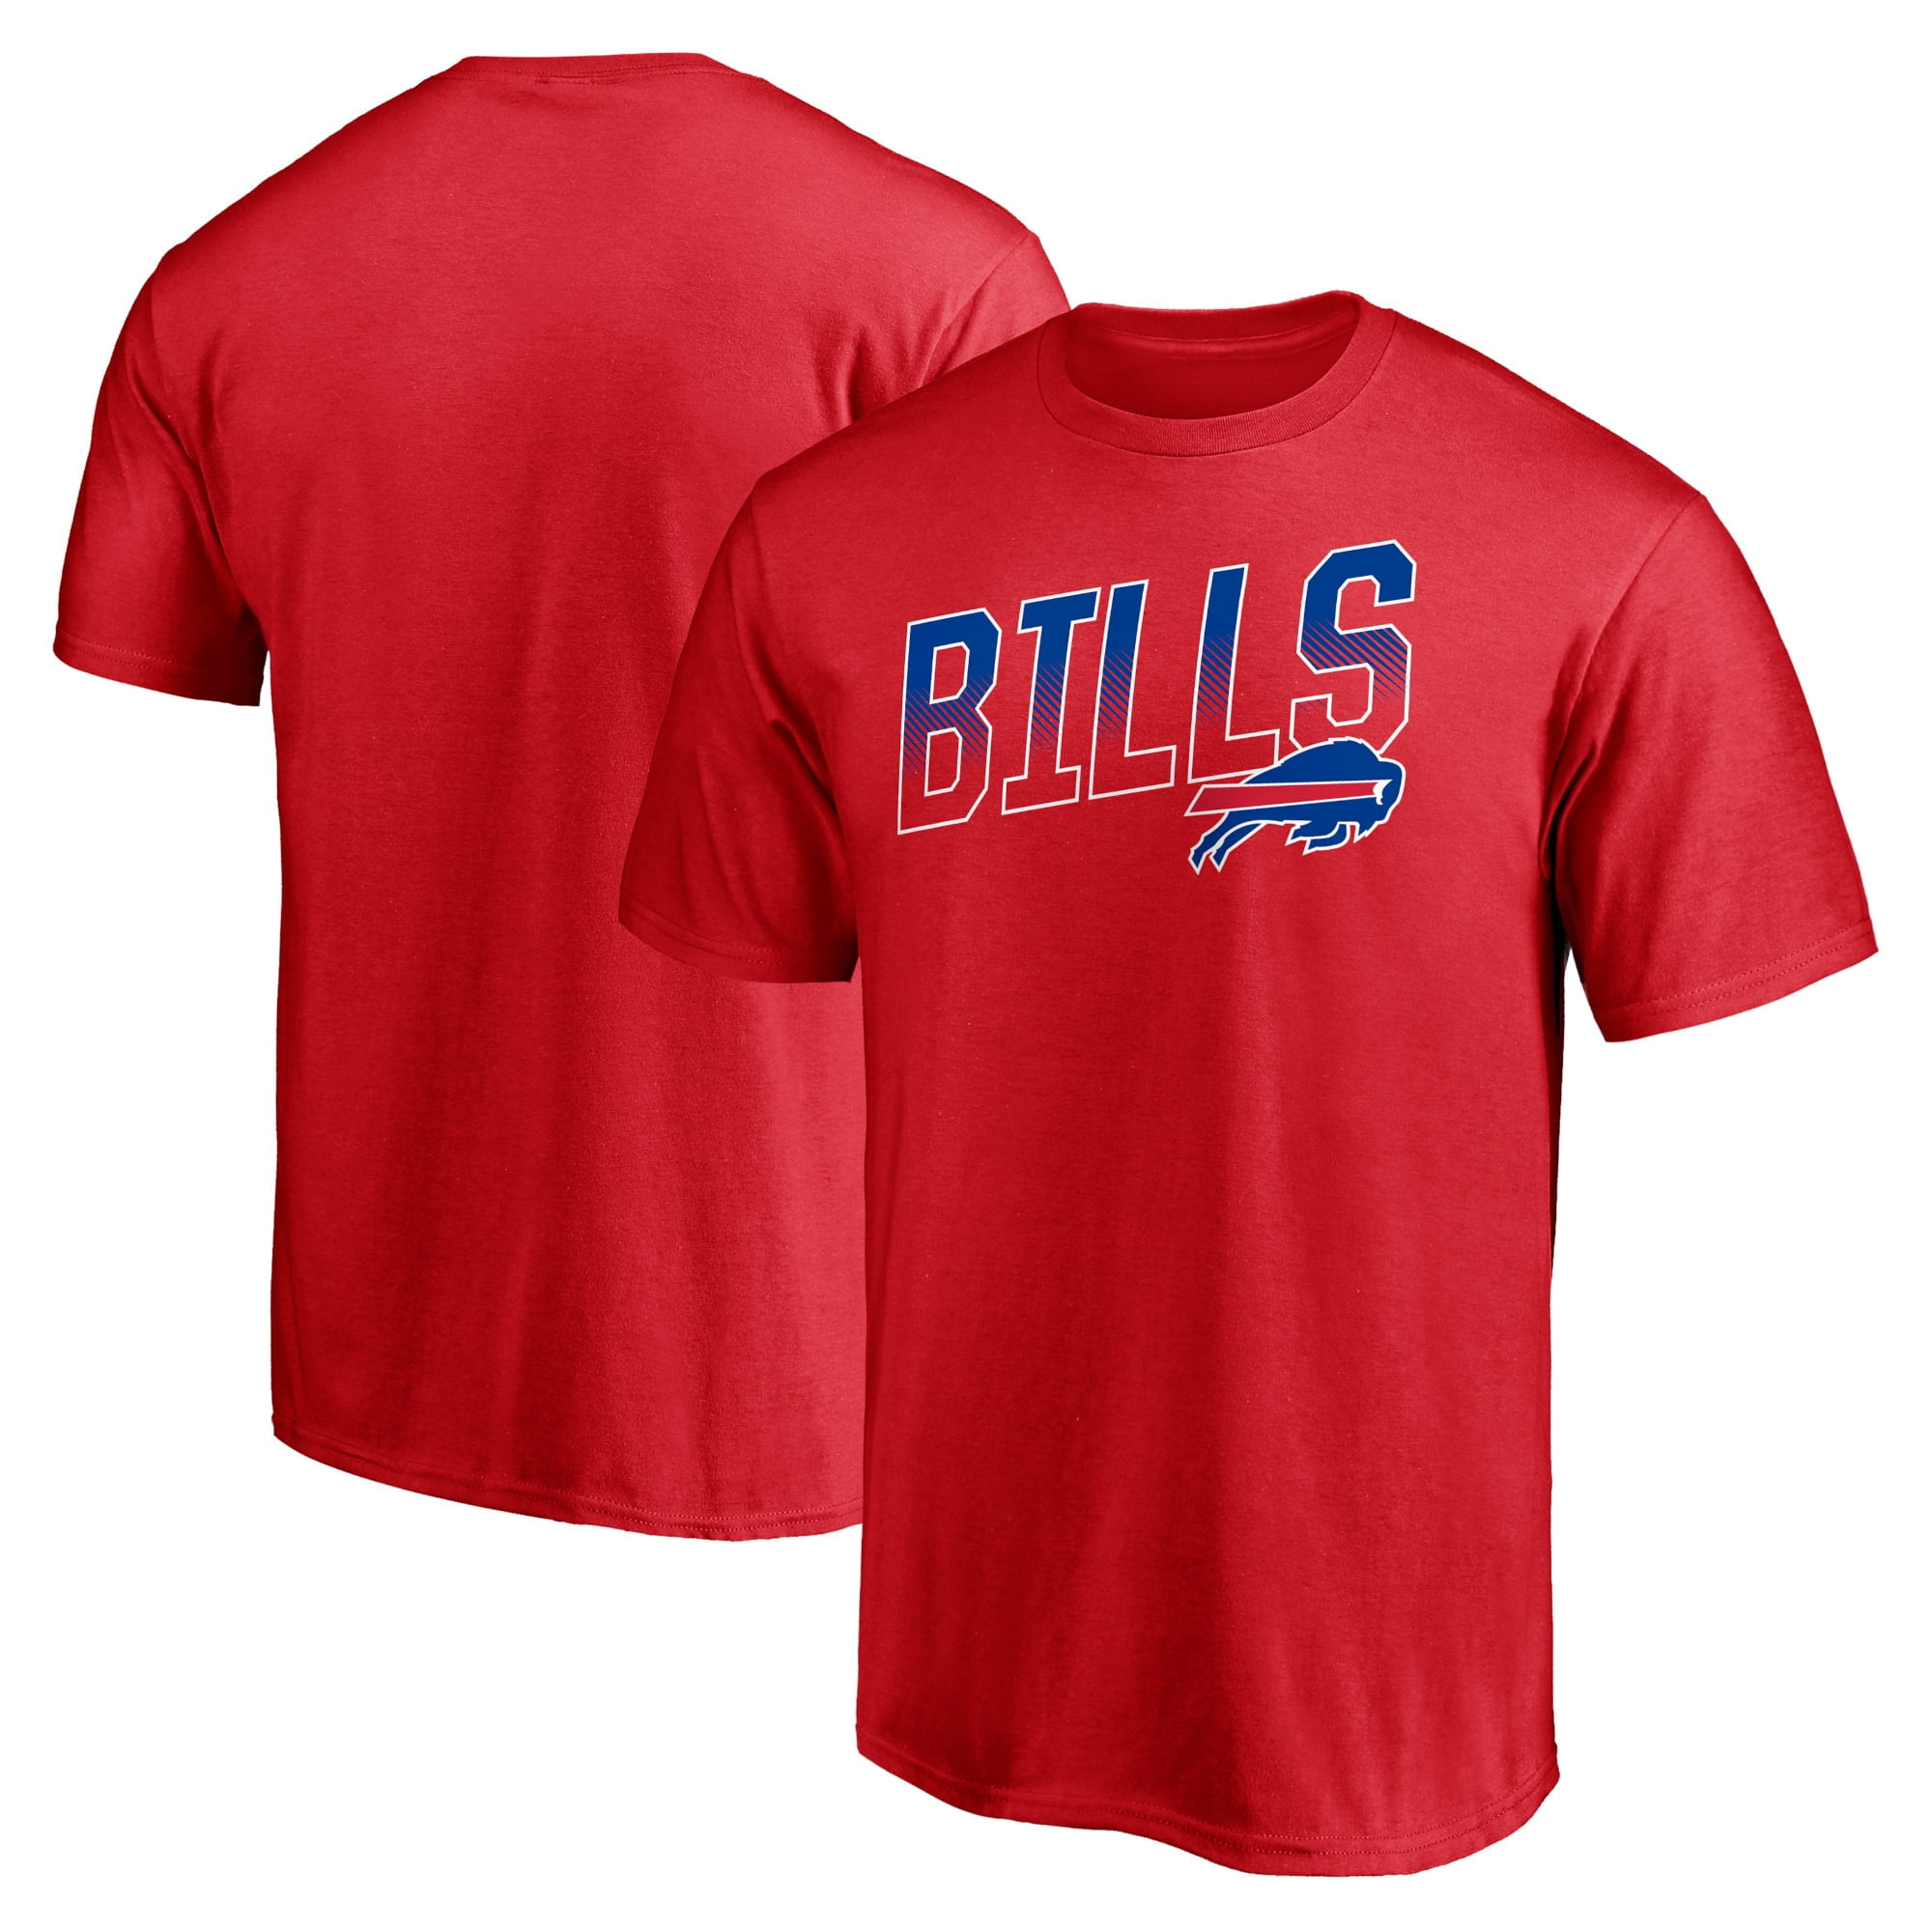 Buffalo Bills Tough Win T-Shirt - Red 